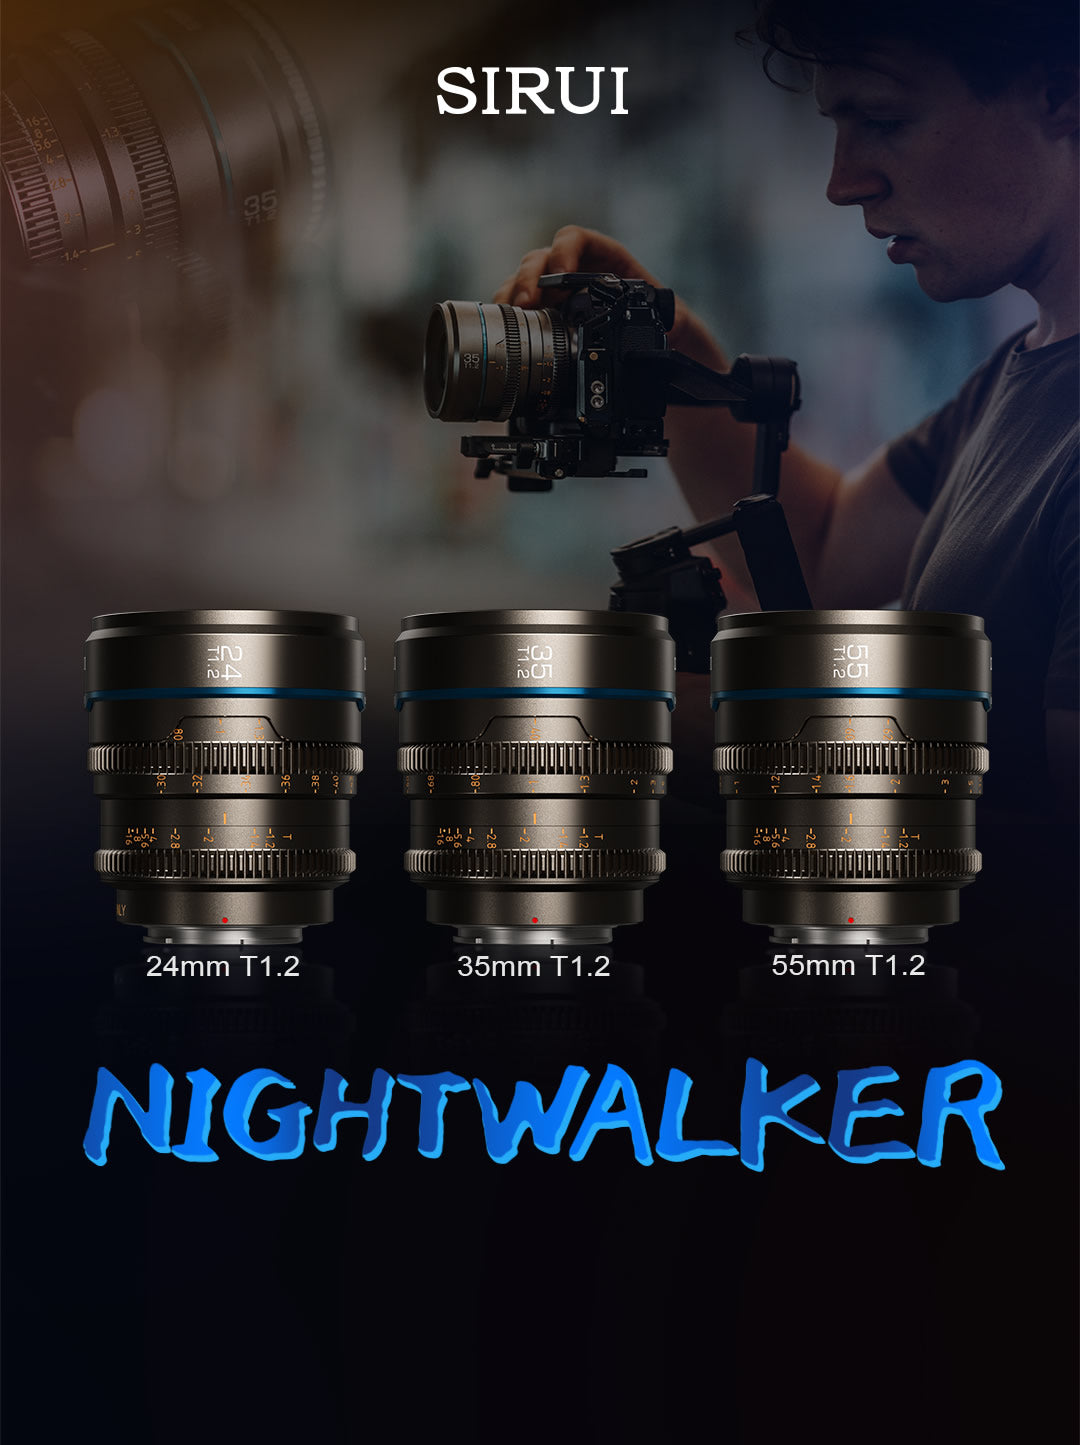 SIRUI Night Walker - Sông Hồng Camera